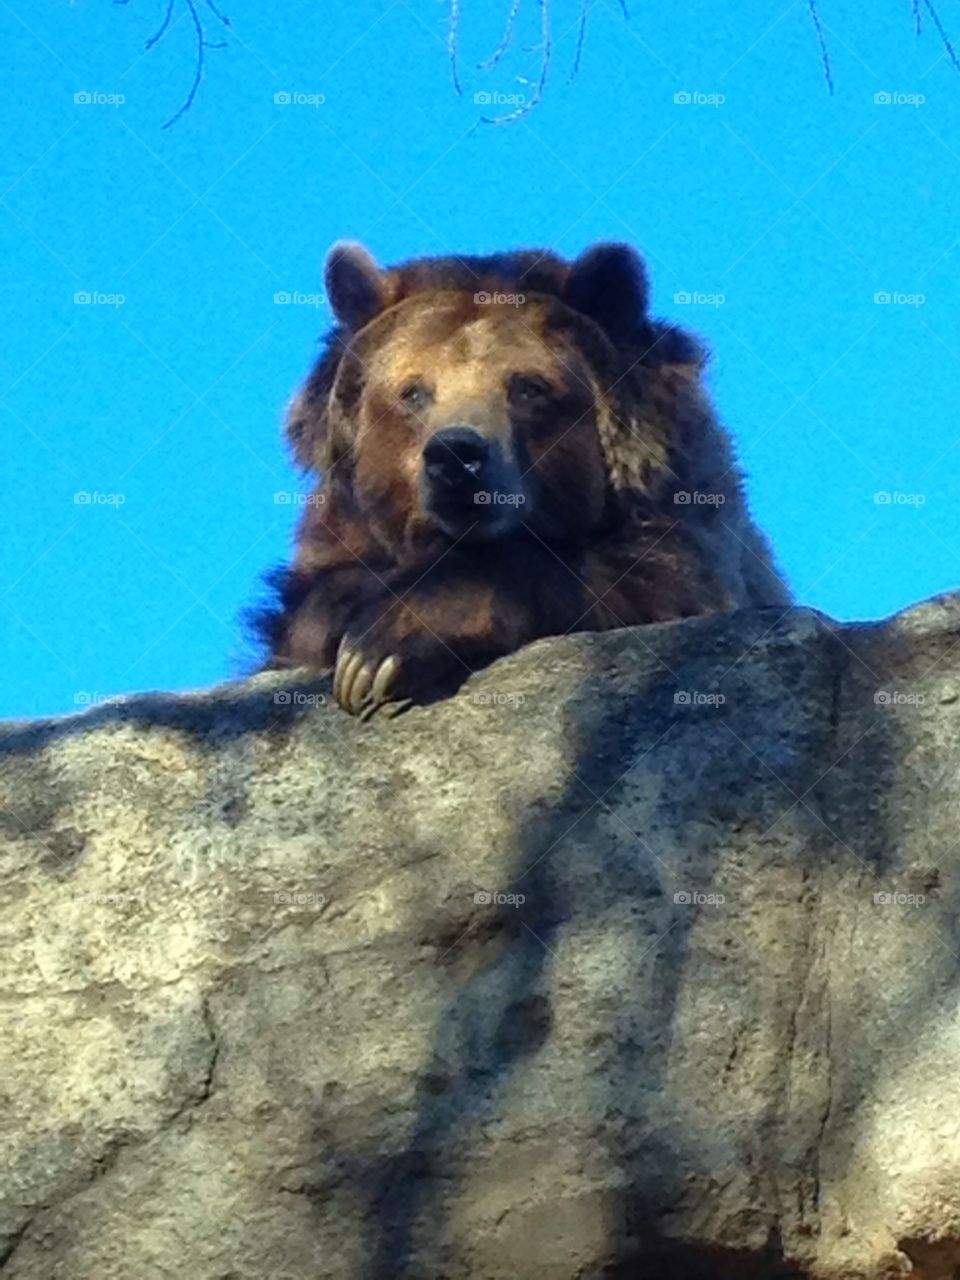 Bear on a rock. Bear peering over rock cliff